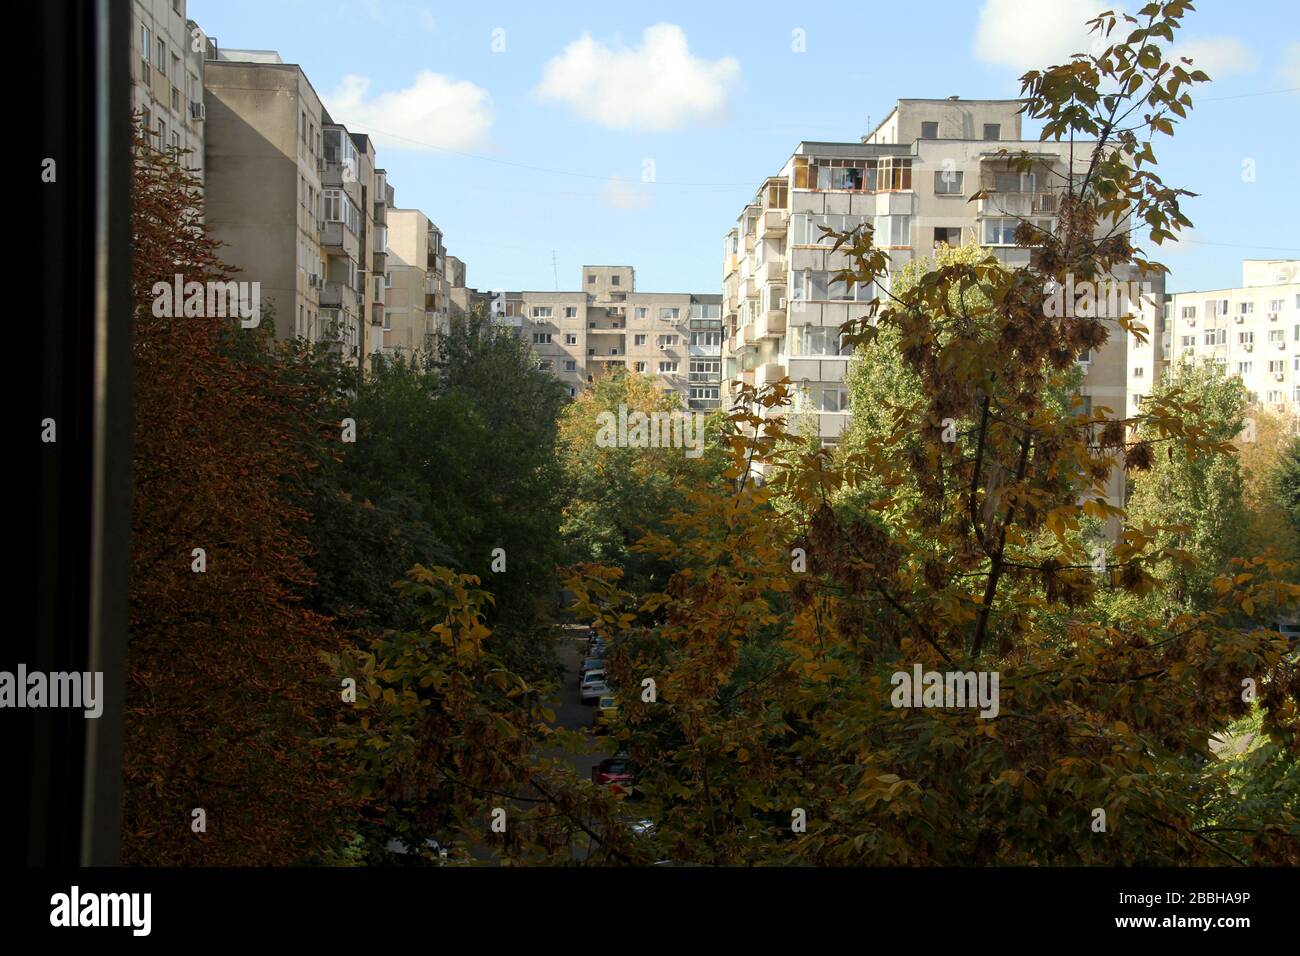 Communist era apartment buildings in Bucharest, Romania Stock Photo